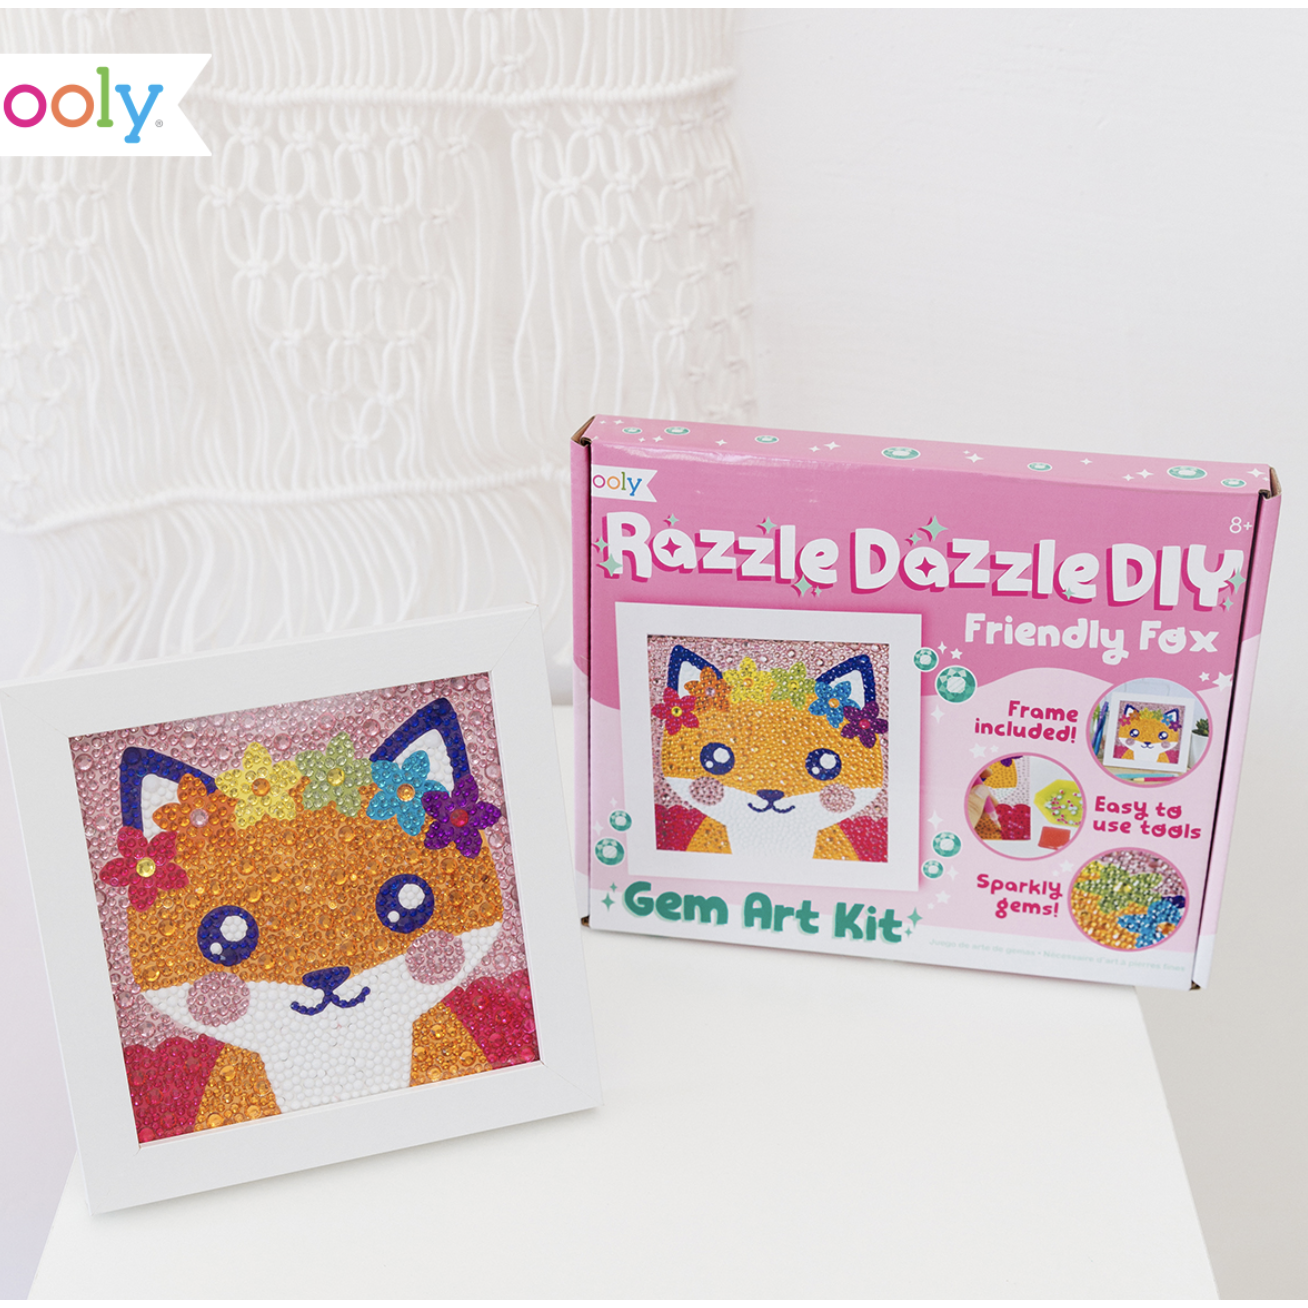 Ooly Razzle Dazzle D.I.Y. Gem Art Kit, Lion